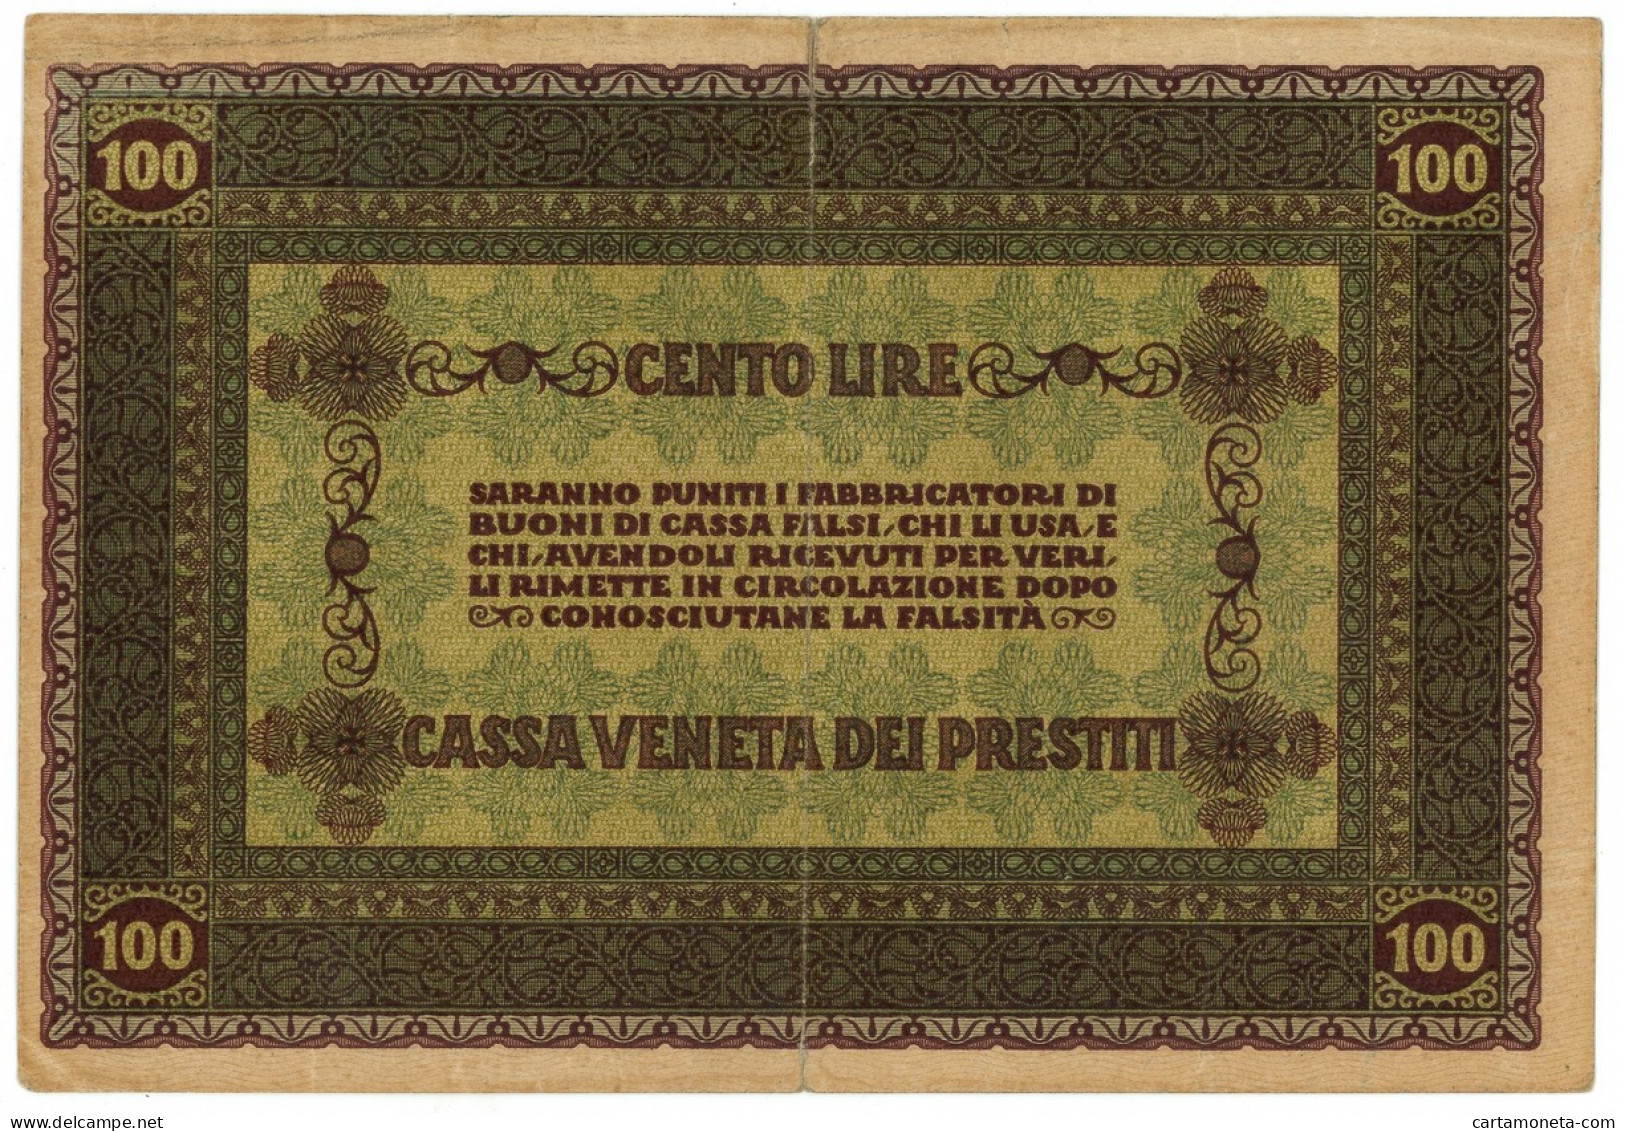 100 LIRE CASSA VENETA DEI PRESTITI OCCUPAZIONE AUSTRIACA 02/01/1918 BB - Austrian Occupation Of Venezia